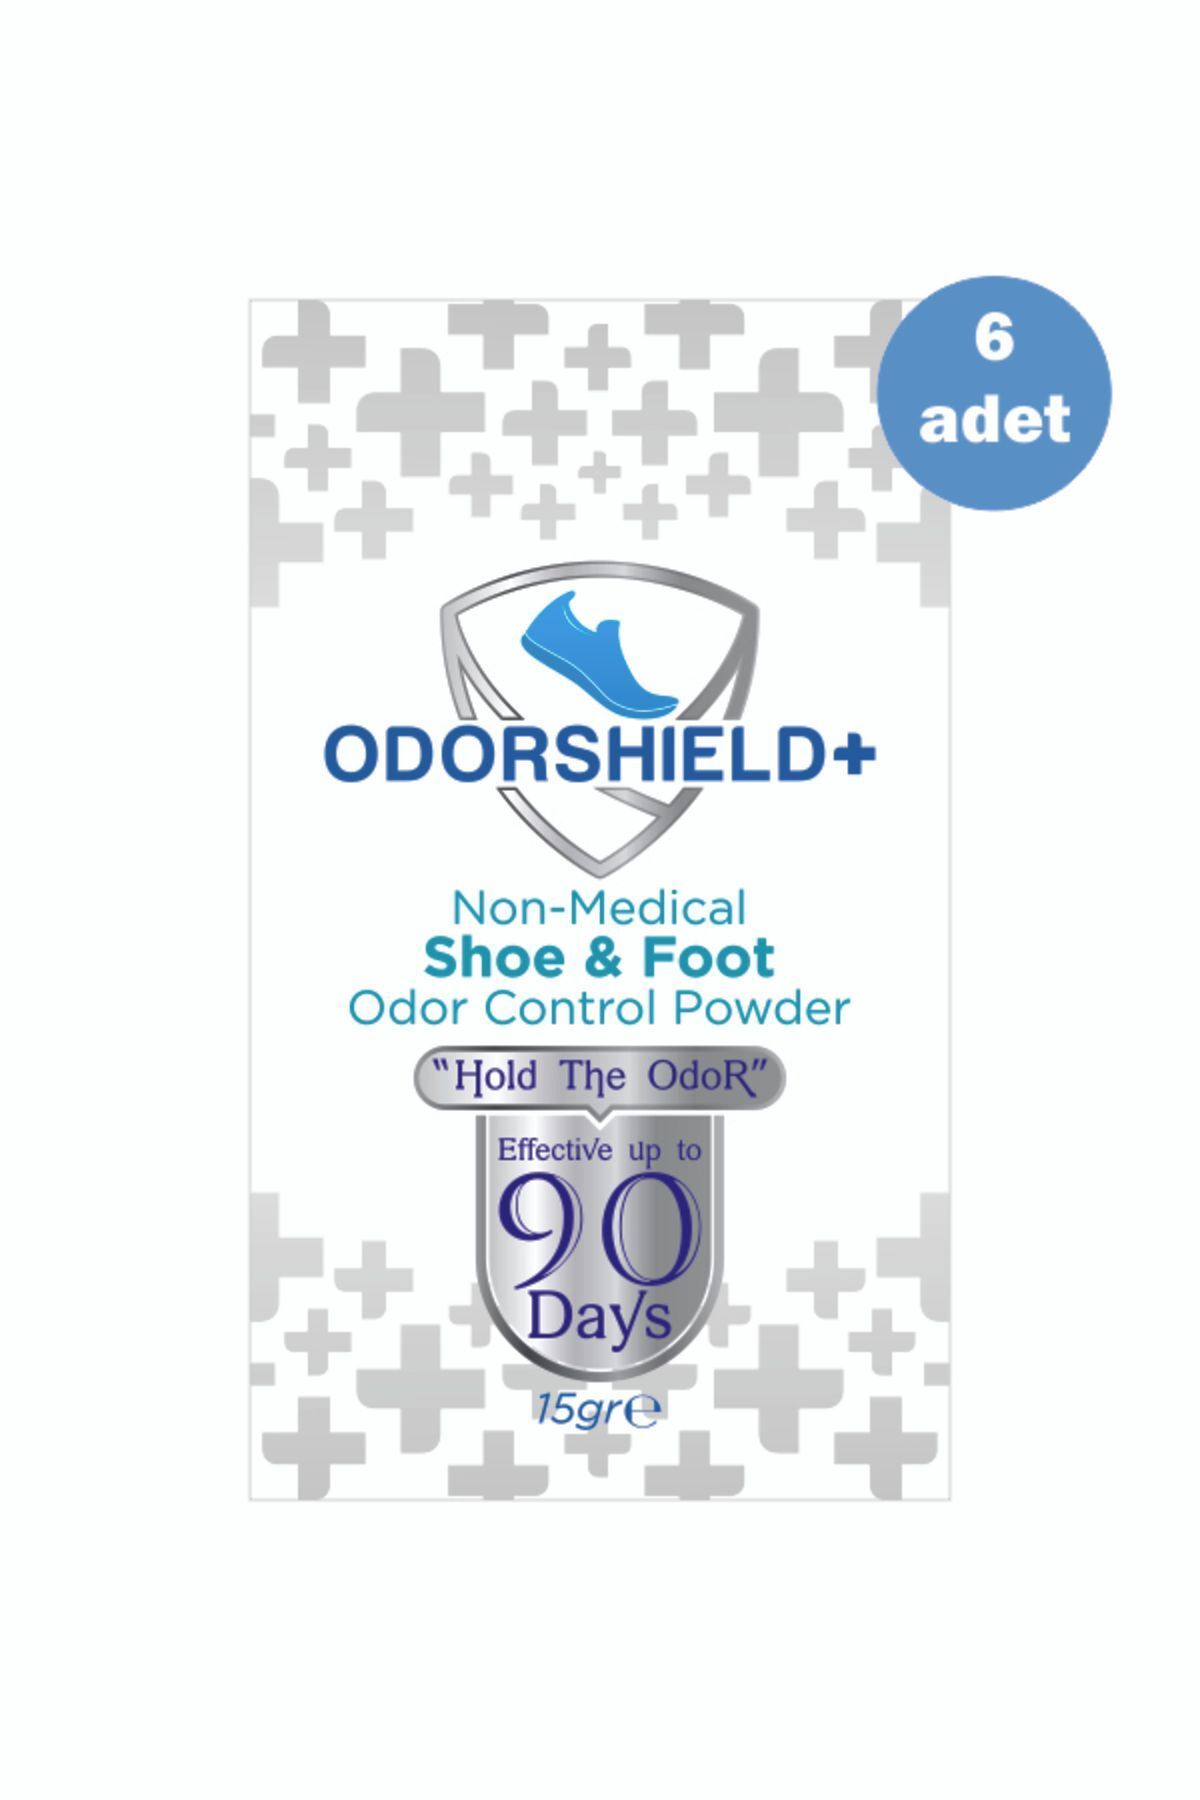 Odorshield+ 6 Adet Ayak Koku Giderici - Ayakkabı Koku Giderici Toz - 90 Gün Etkili